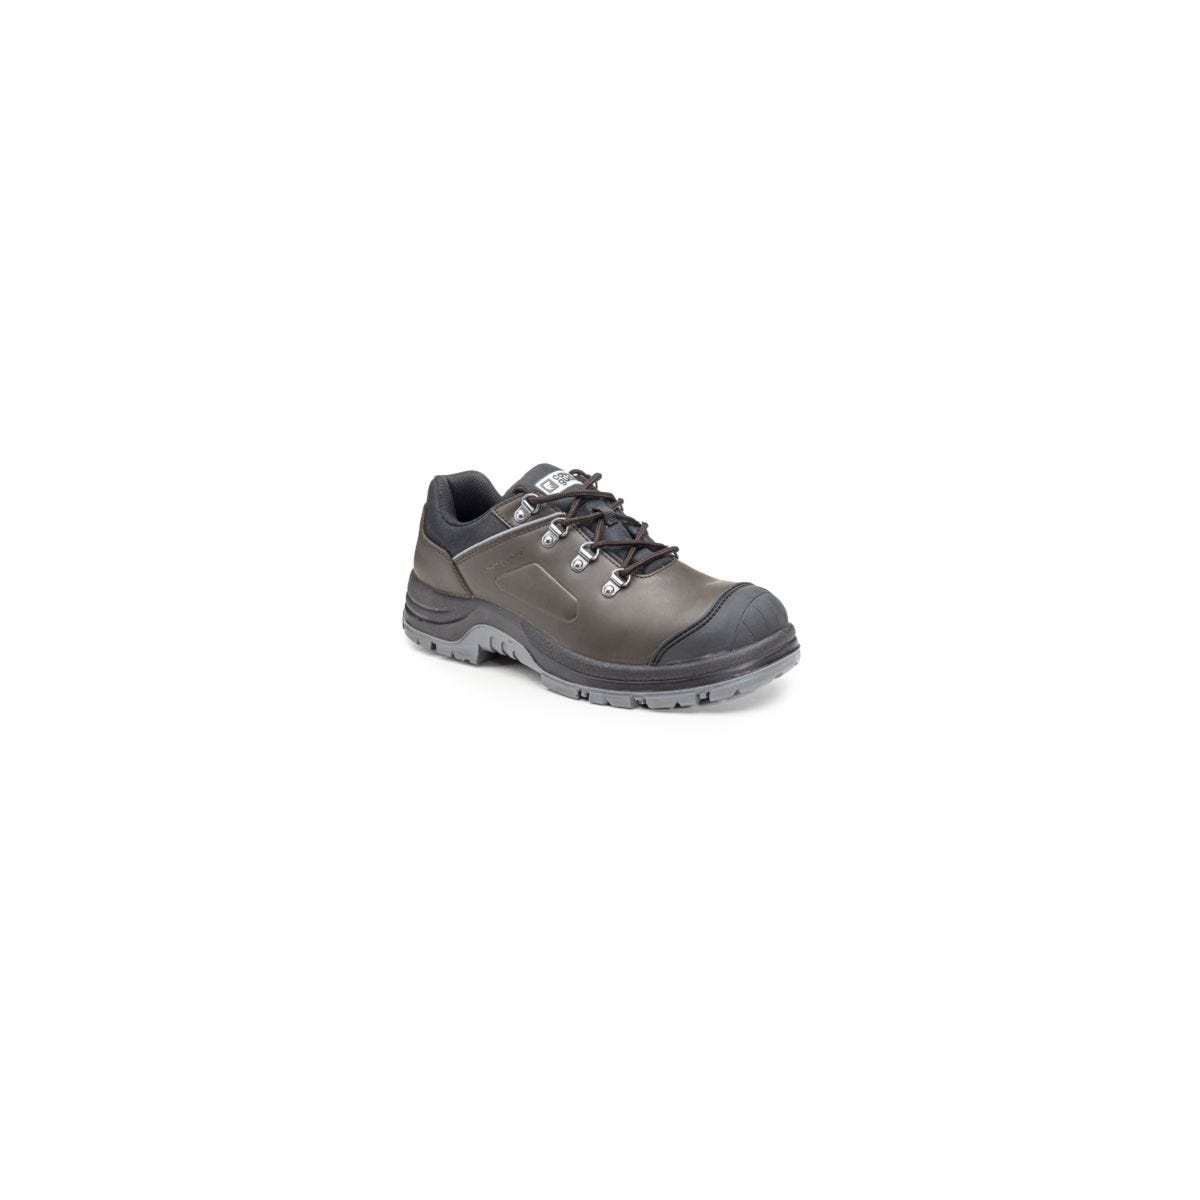 Chaussures de sécurité S3 FLINT Basse Croute de cuir Marron - COVERGUARD - Taille 47 0